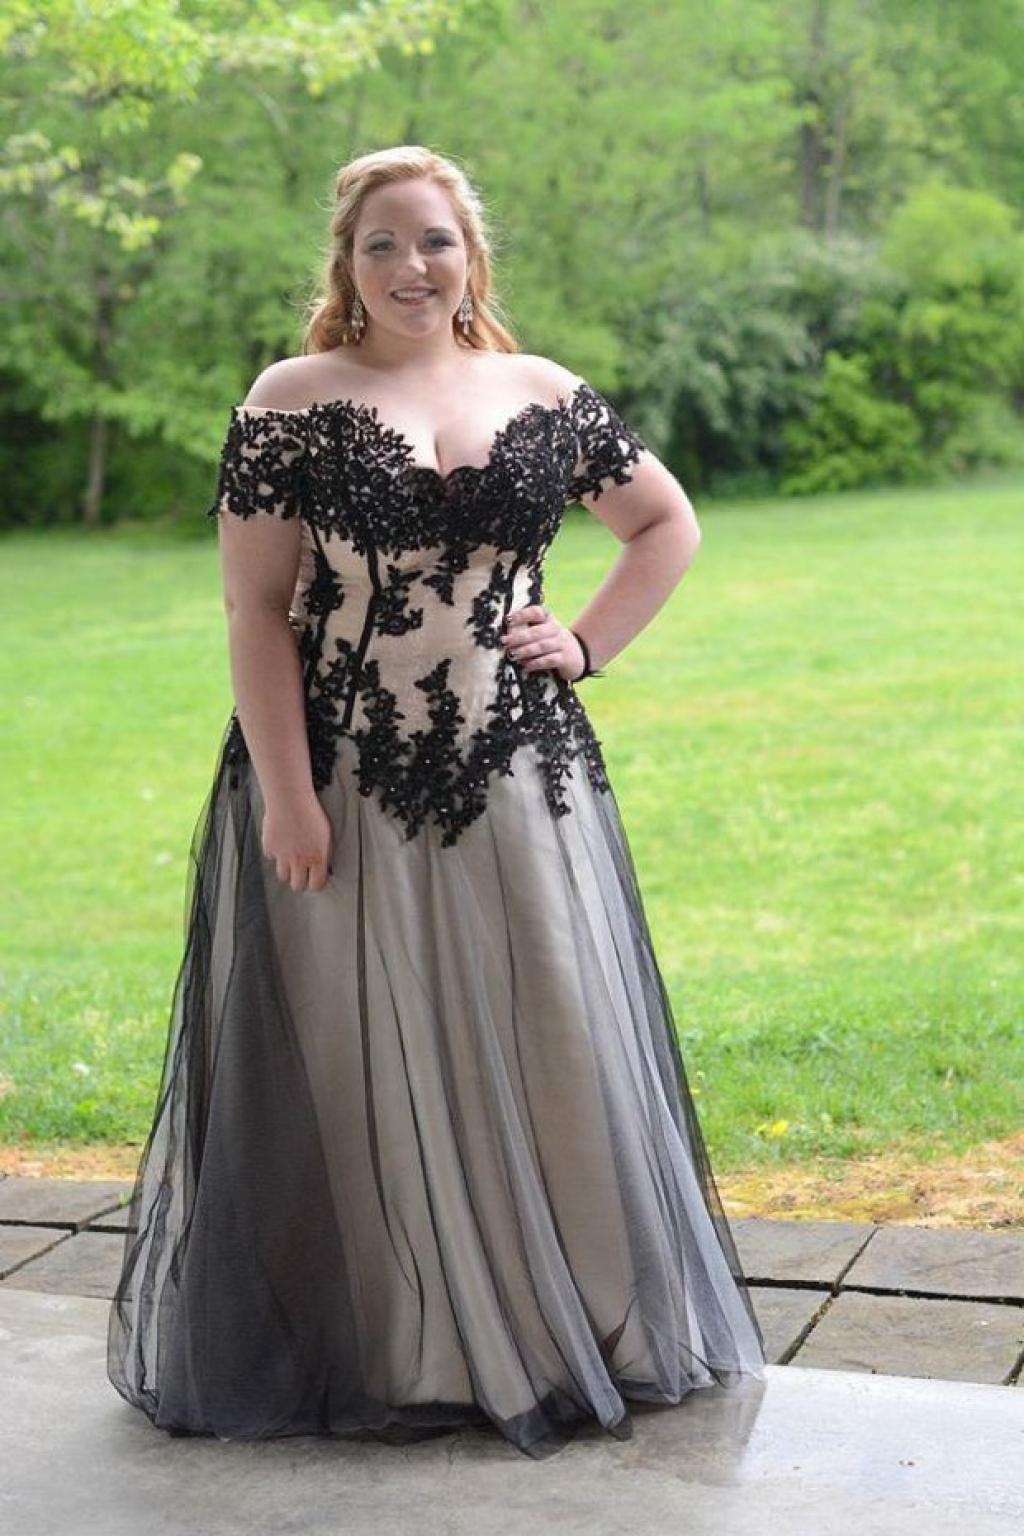 Sa robe est jugée trop sexy pour son poids, alors on l'oblige à porter le veston du directeur au bal de fin d'année!